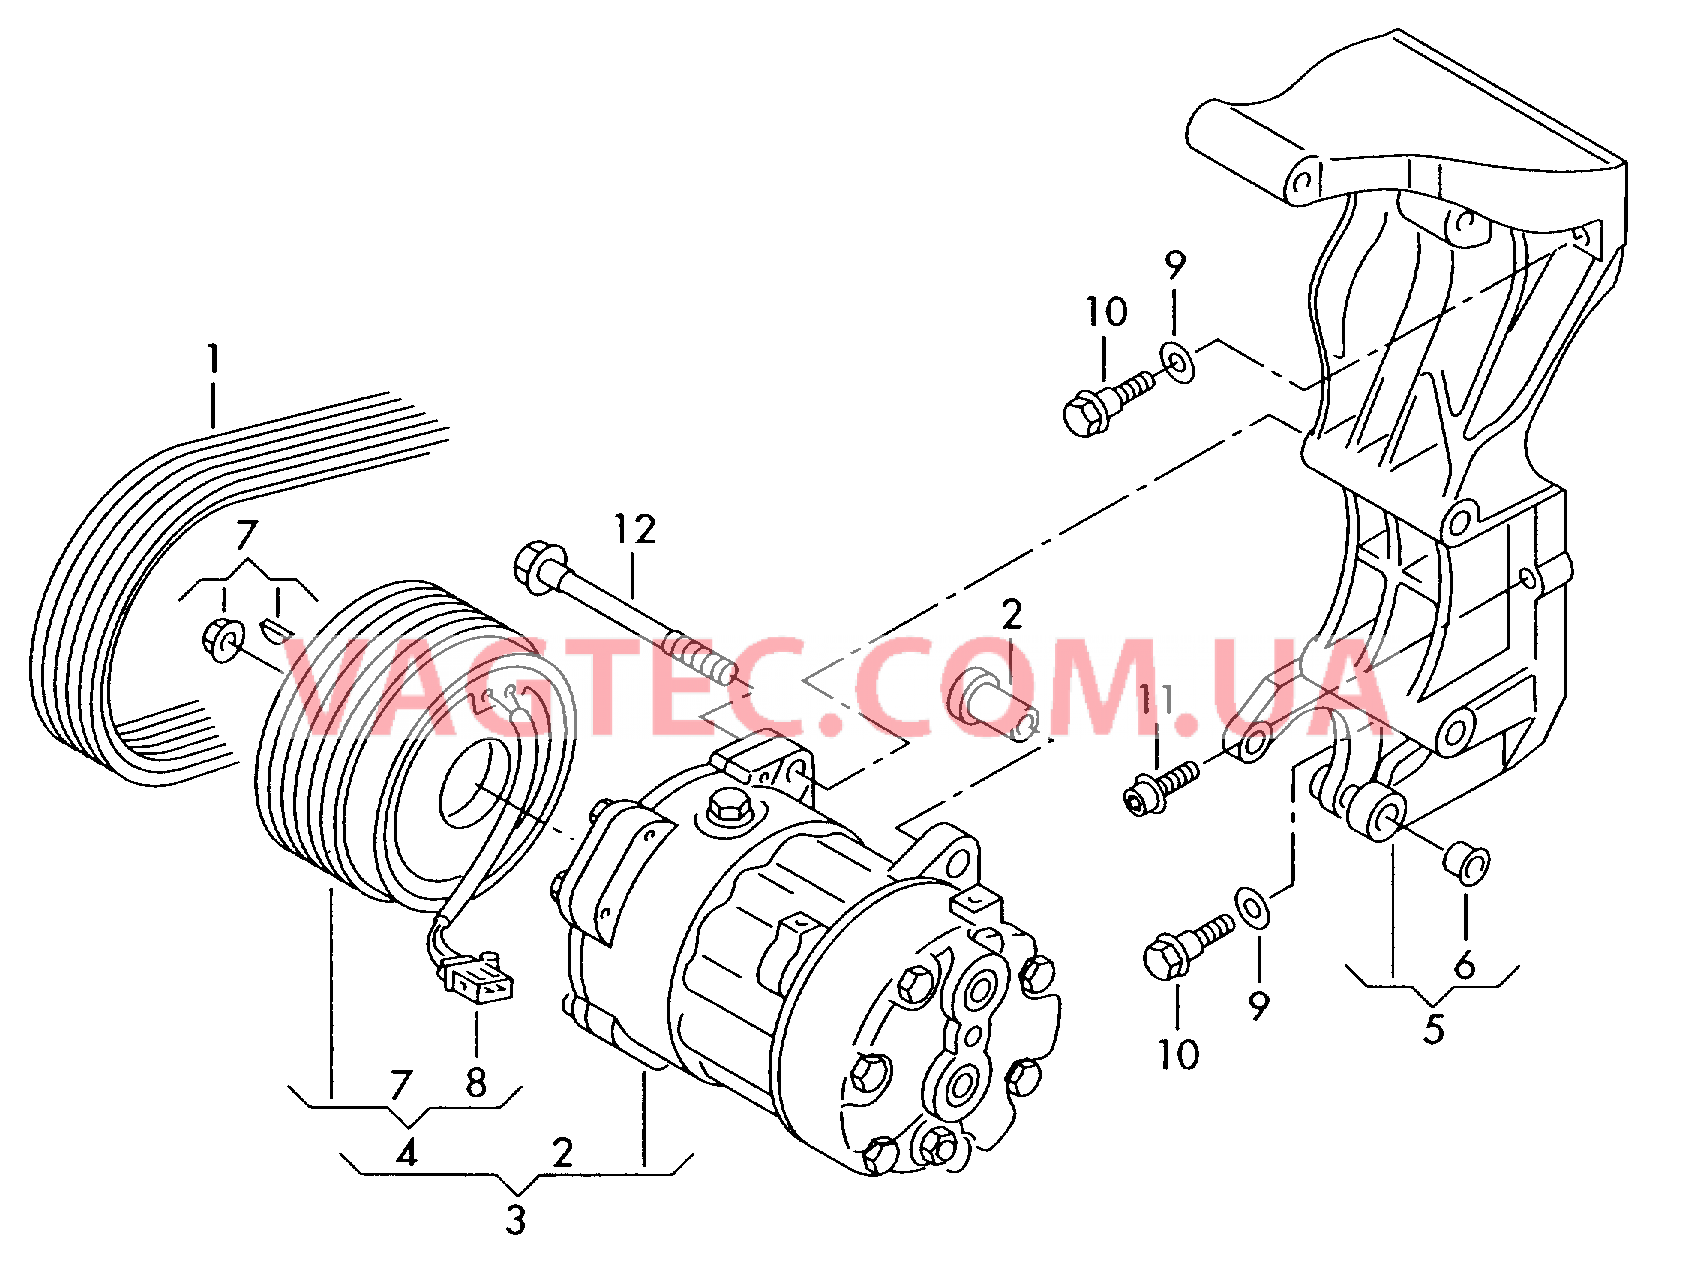 Компрессор климатической уст. Электромагнитная муфта Кронштейн генератора и компрессора кондиционера  для VOLKSWAGEN Transporter 2004-1